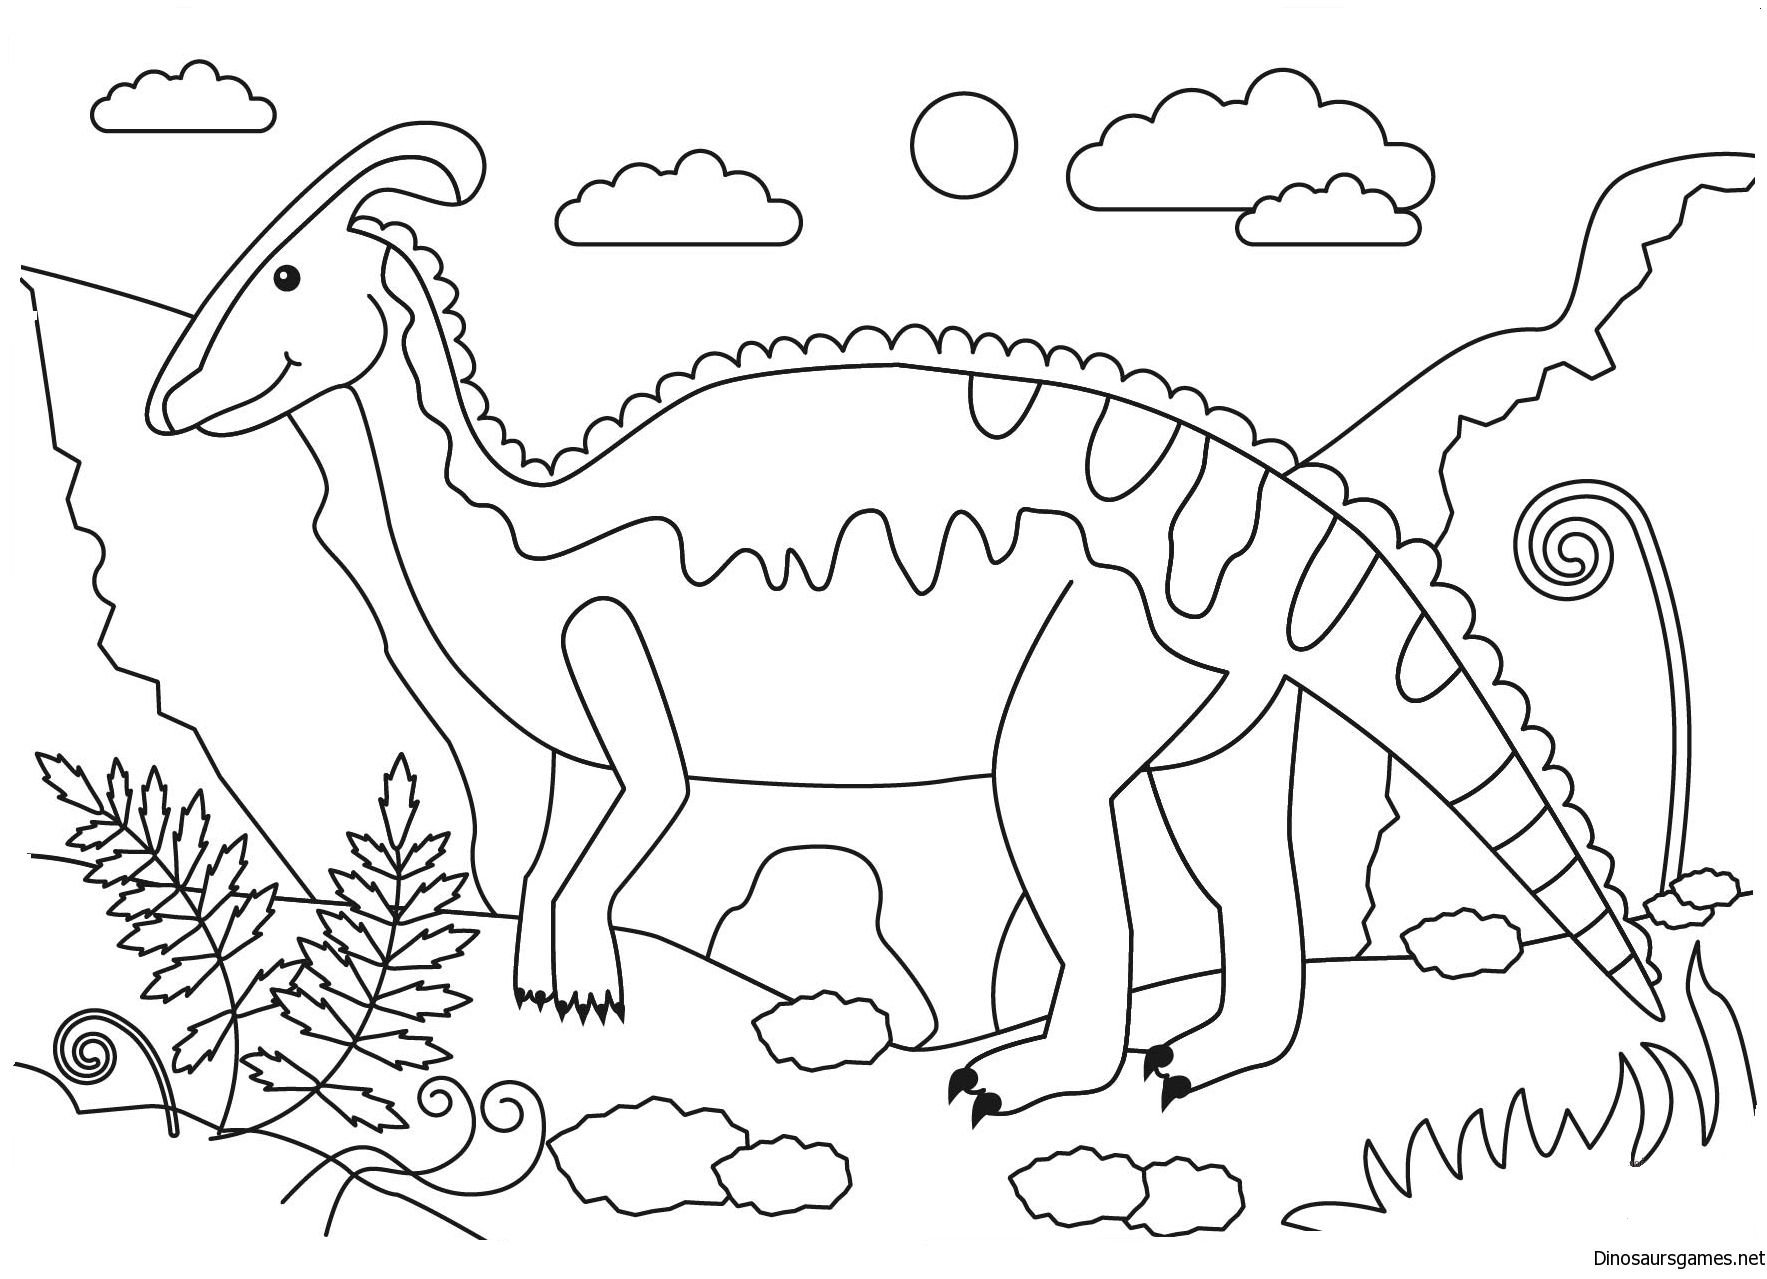 Динозавры для раскрашивания. Динозавры / раскраска. Динозавр раскраска для детей. Динозаврики раскраска для детей. Динозавры для раскрашивания детям.